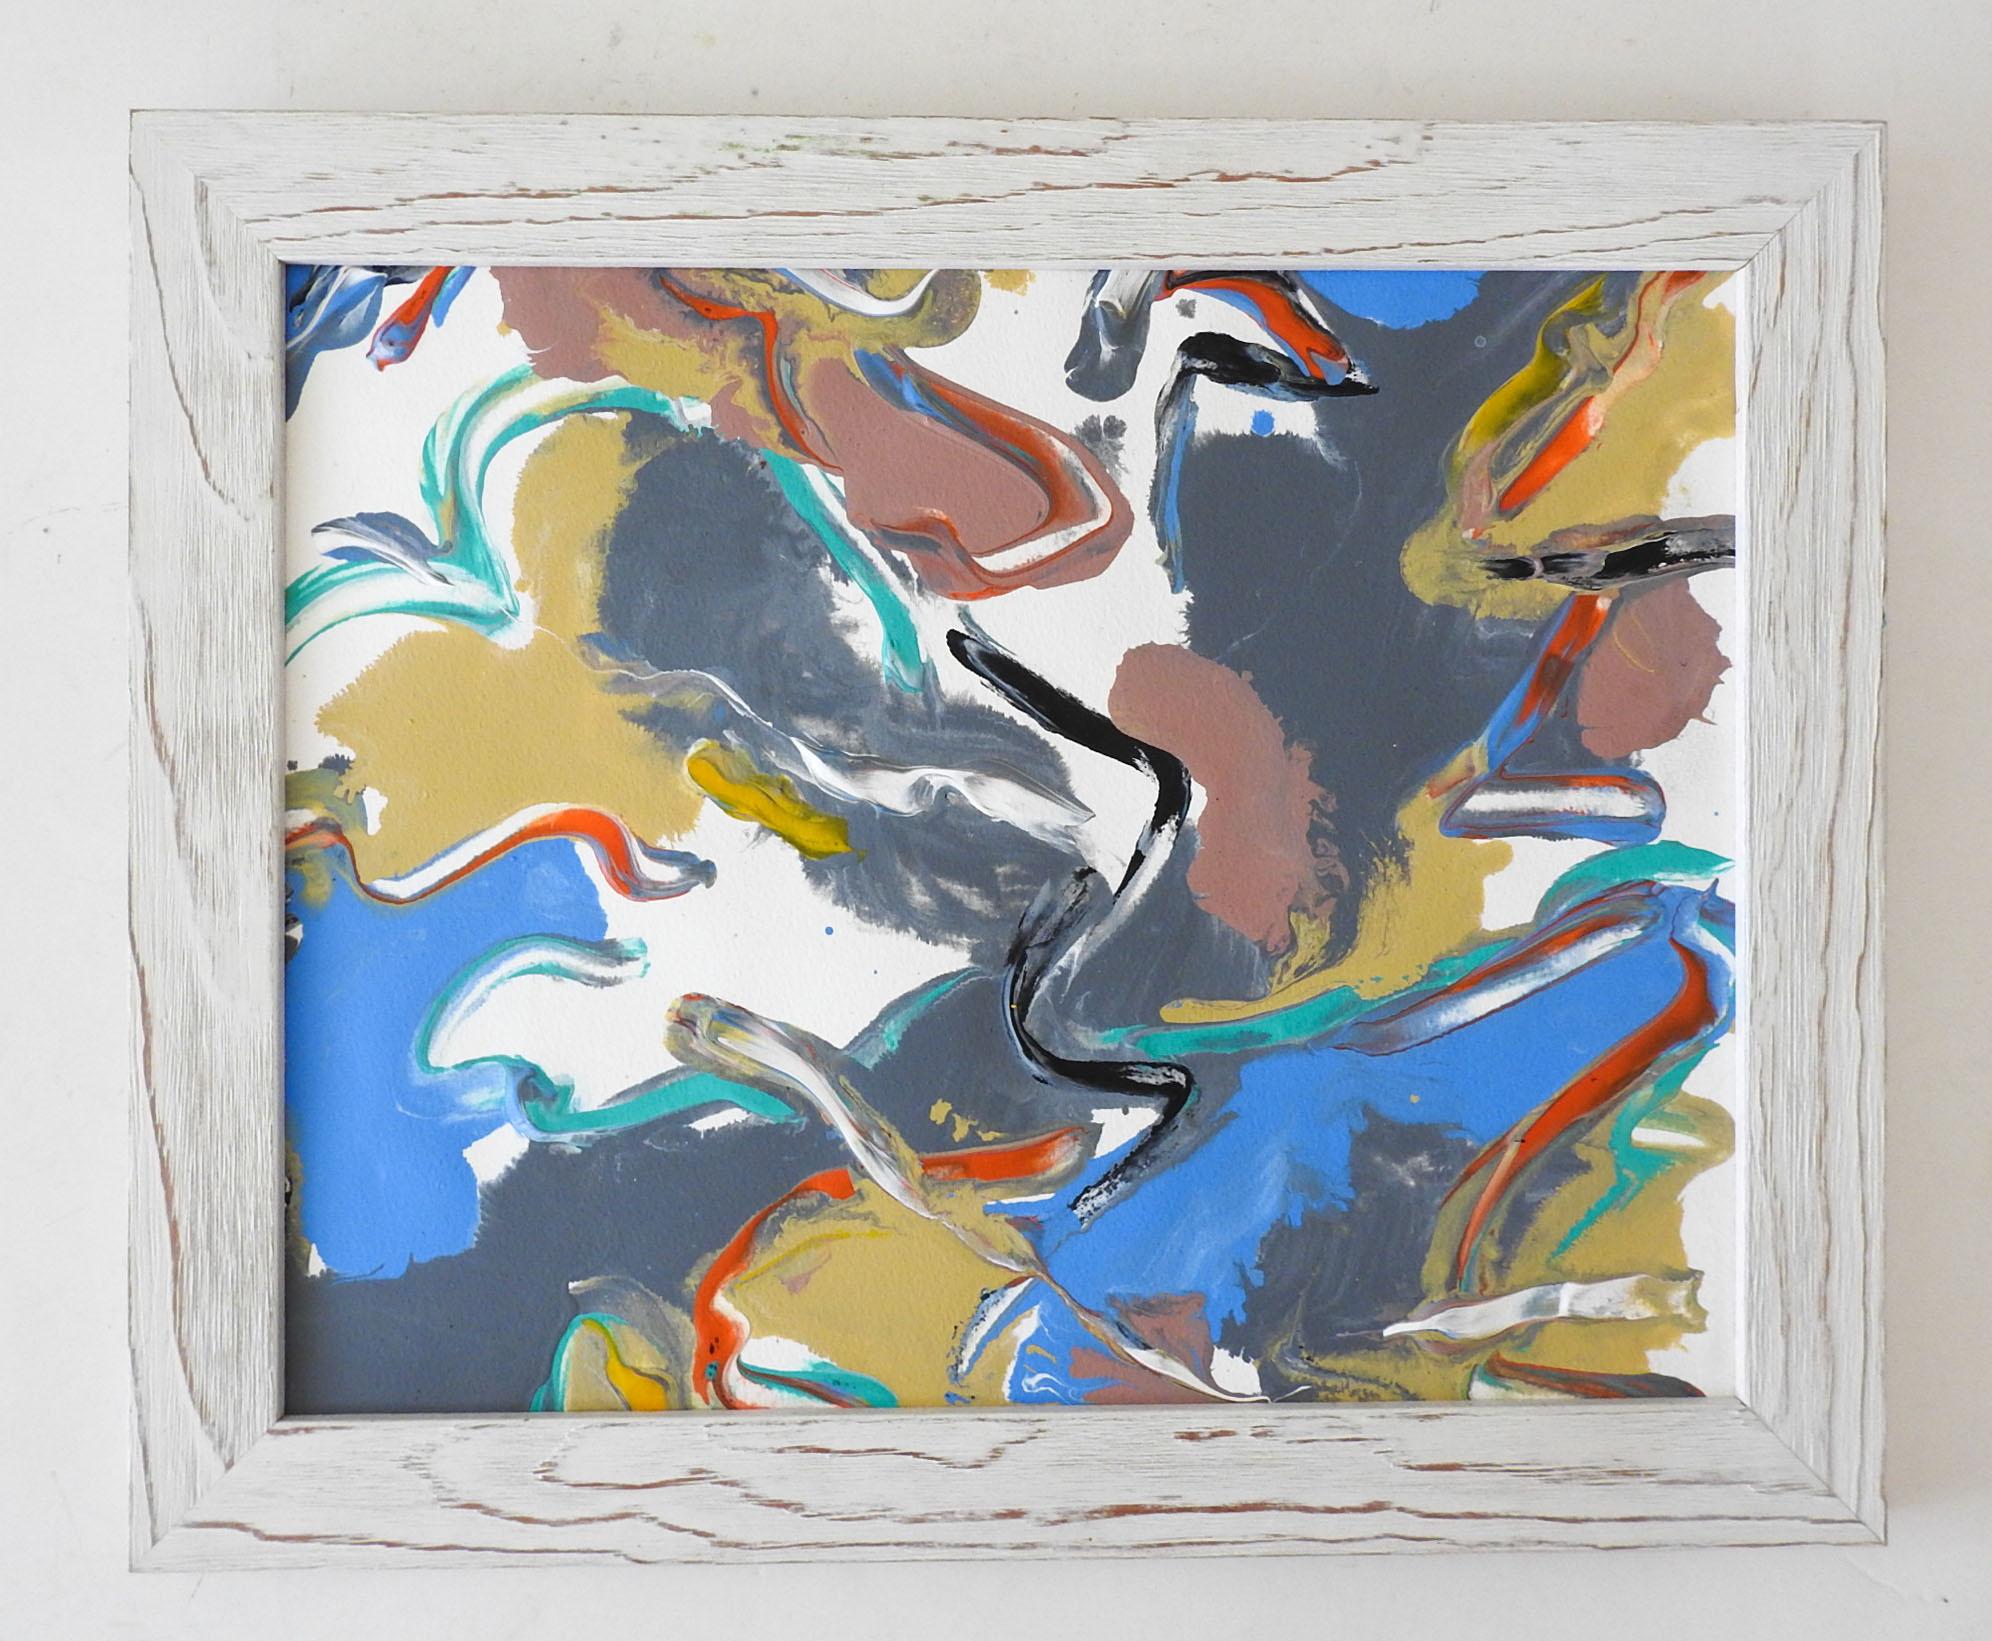 Peinture expressionniste abstraite à l'acrylique sur papier de la fin du 20e siècle en bleu, gris, blanc et rouge. Non signée. Présenté dans un cadre en bois blanc à finition vieillie, éraflures sur le cadre.